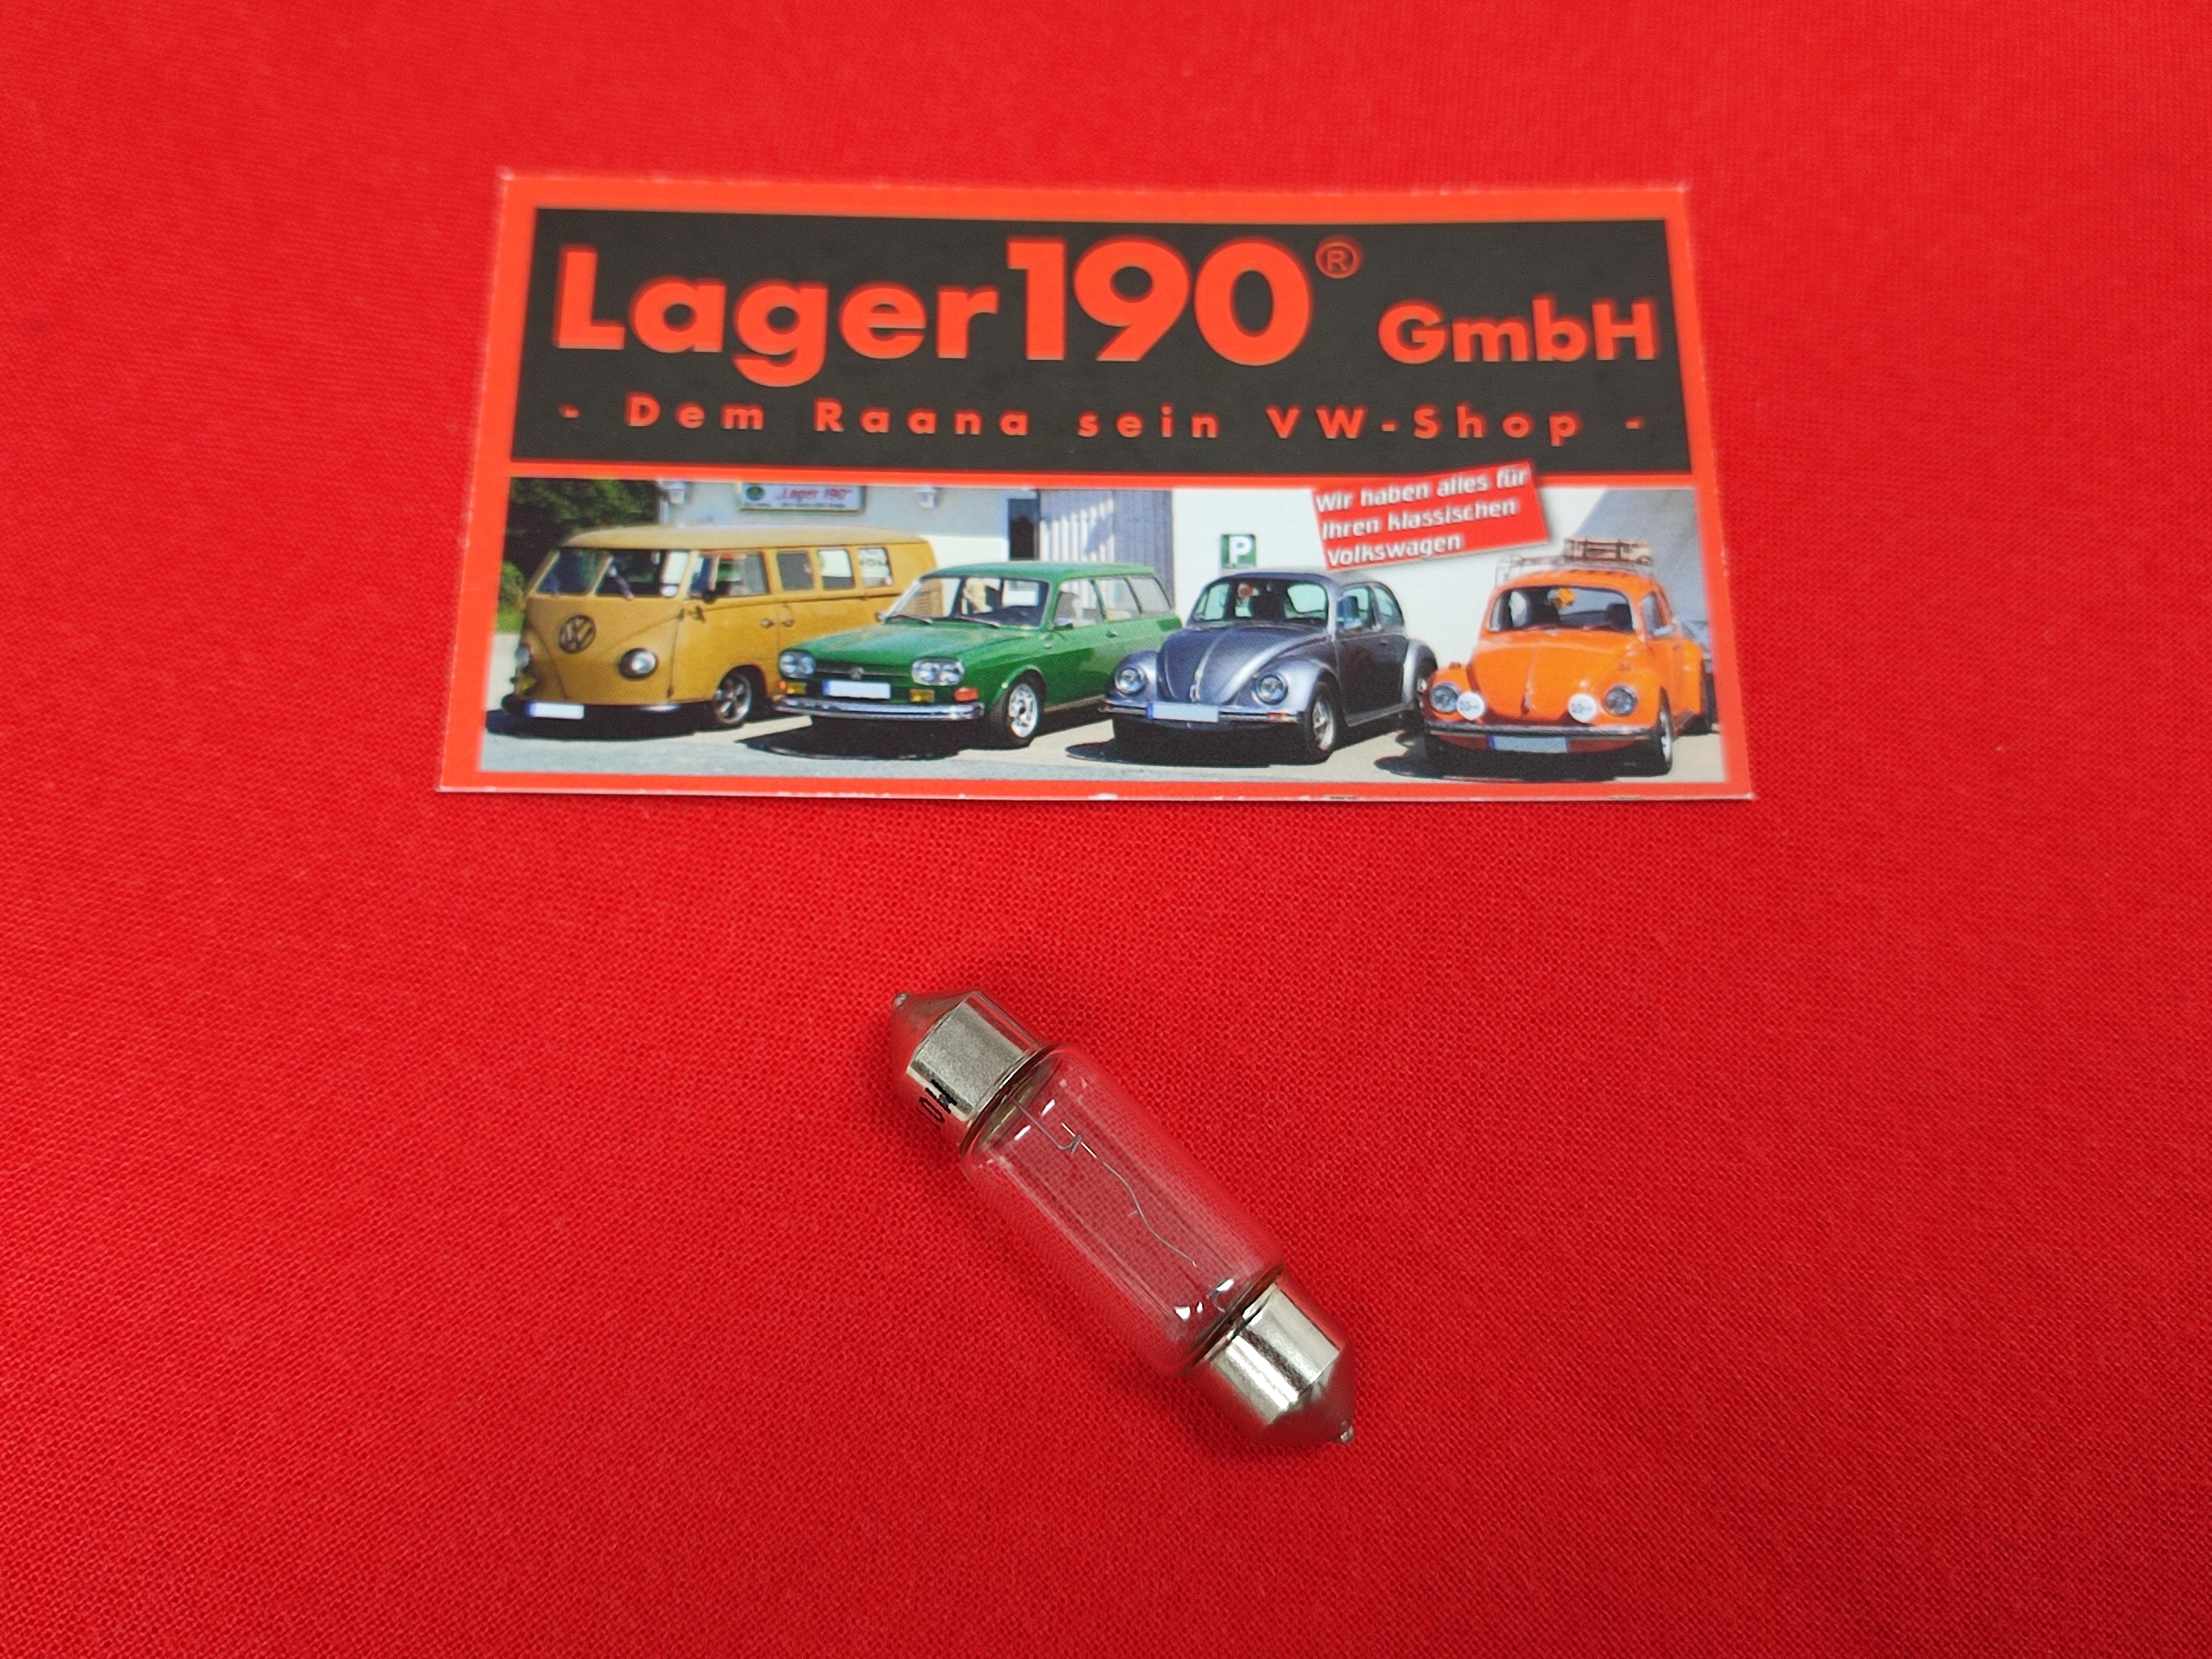 Soffitte 12V 10W 37mm Innenbeleuchtung (09-004) - Lager190 GmbH